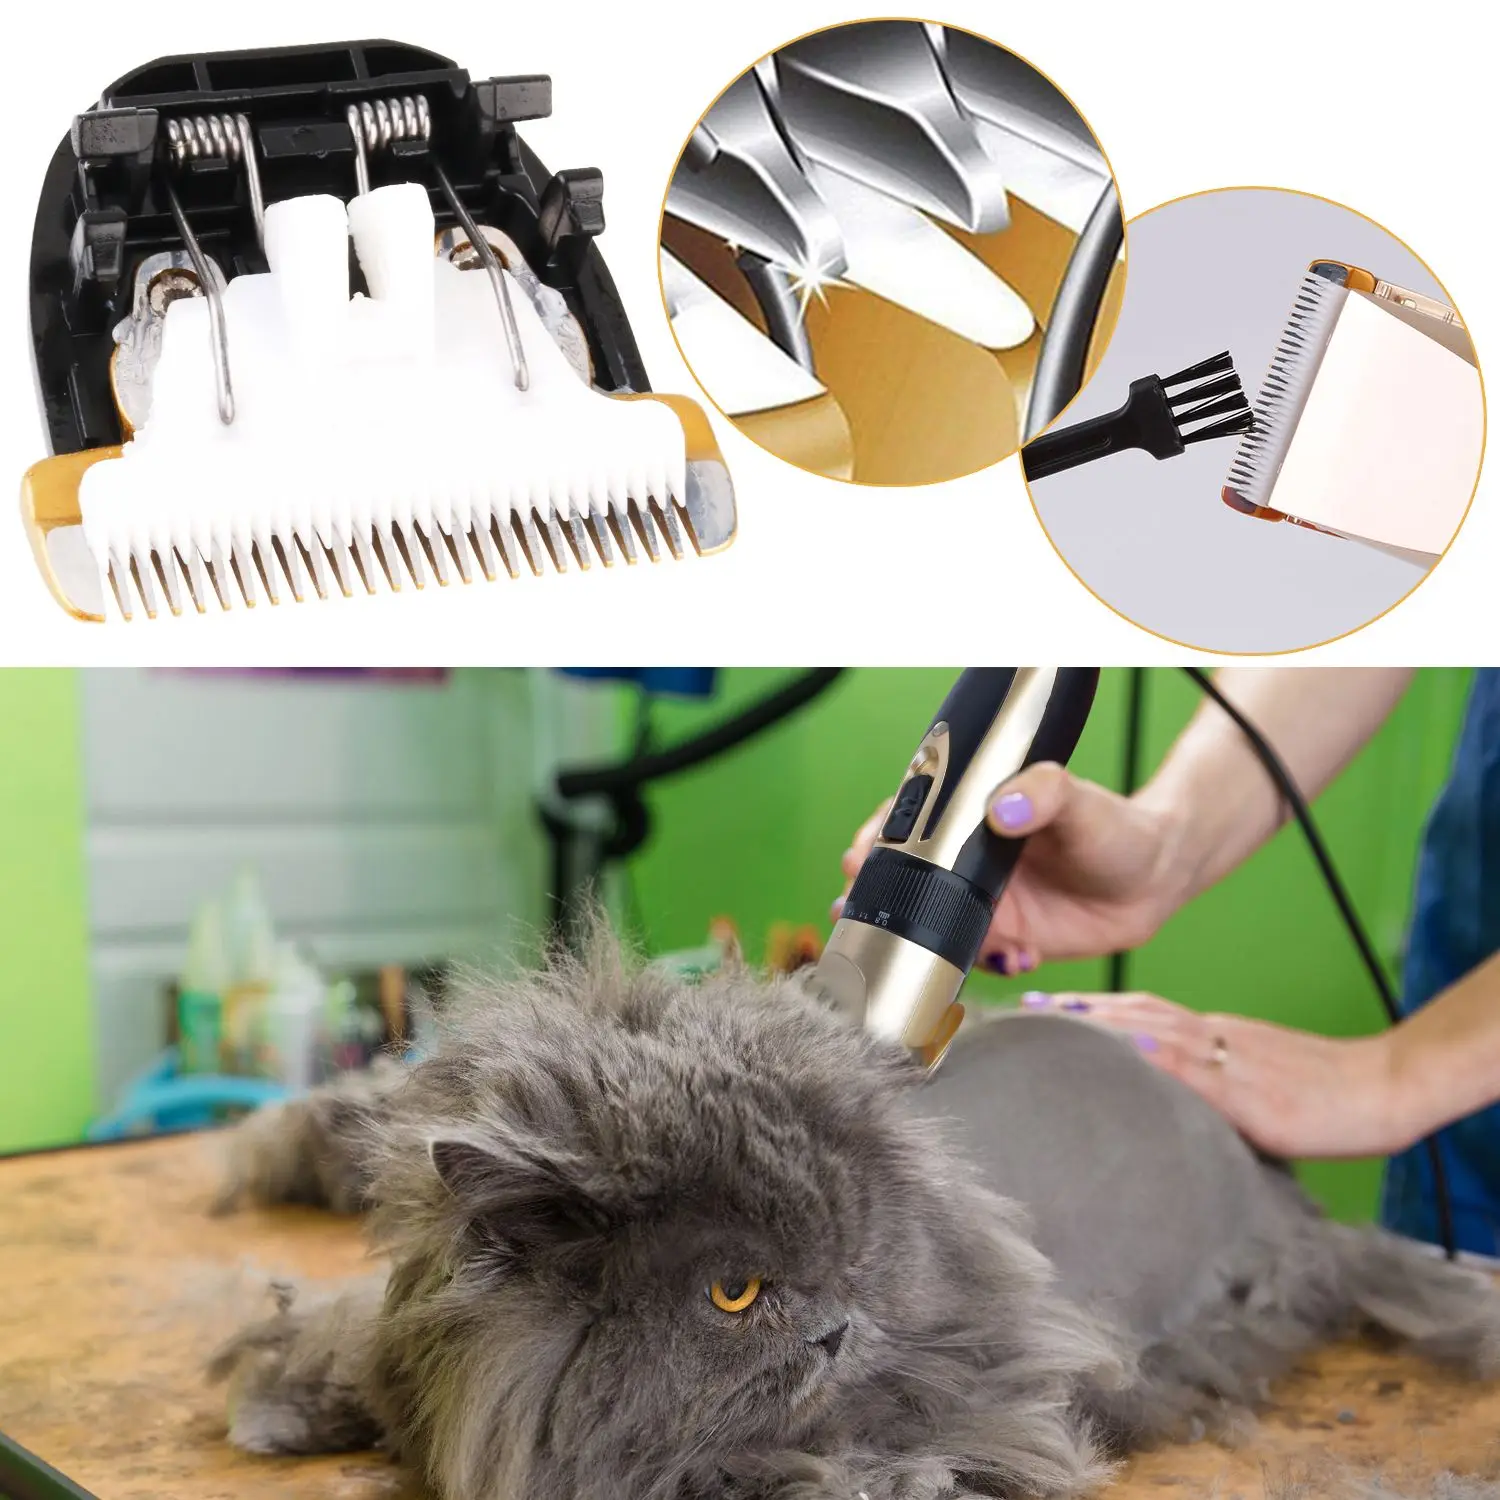 Электрические триммеры для стрижки собак, профессиональные машинки для стрижки, инструмент для ухода, аккумуляторные бритвы для кошек, машинка для стрижки собак